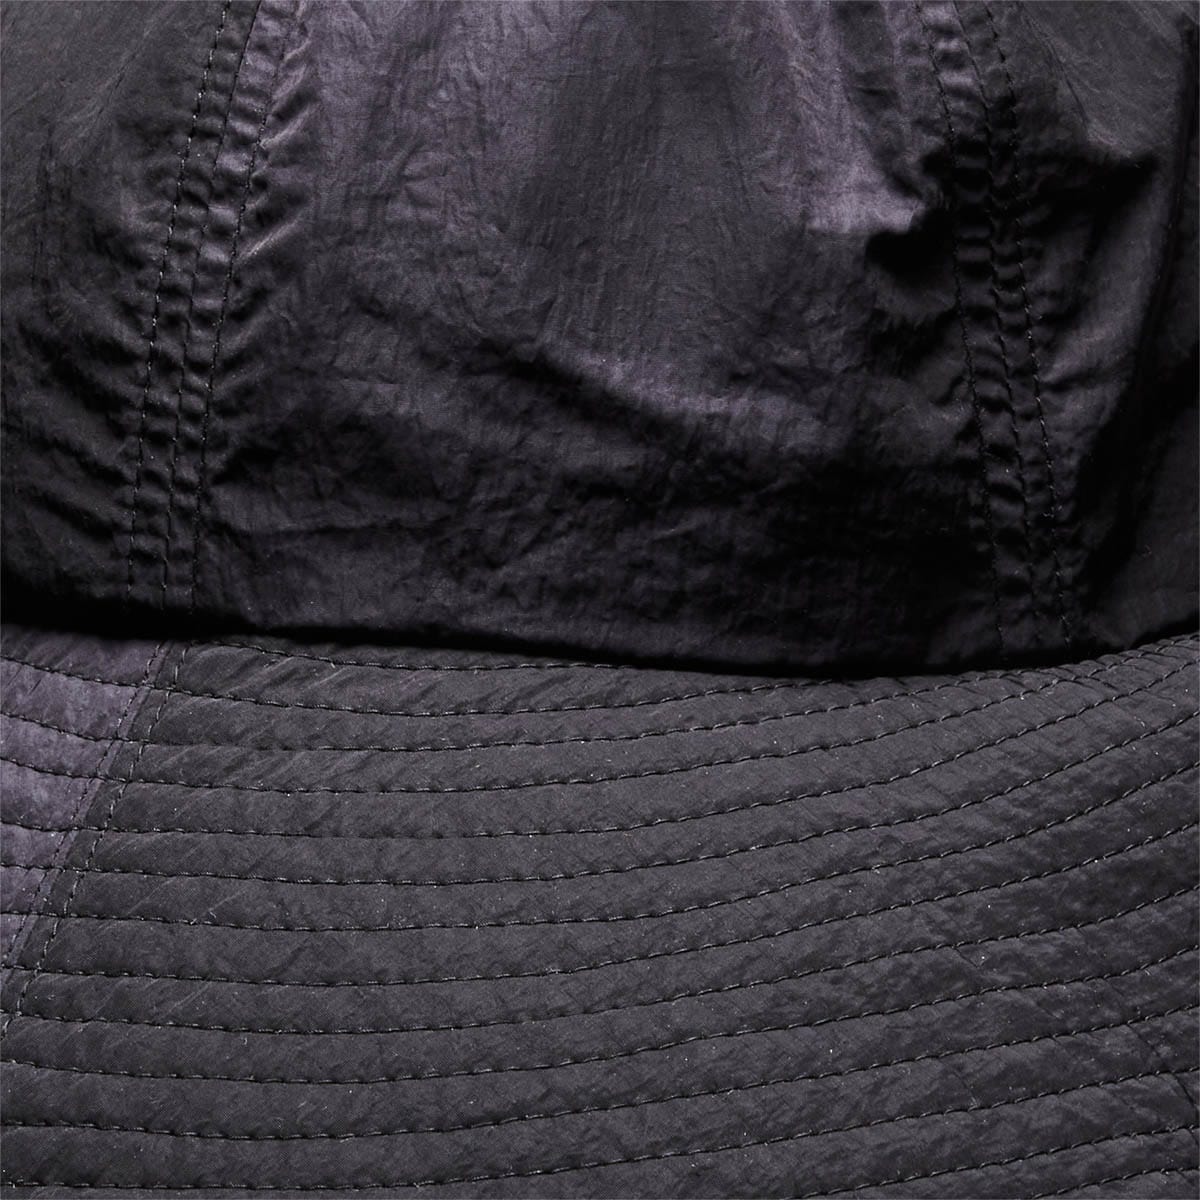 Sasquatchfabrix Headwear BLACK / O/S EAR MUFF HAT